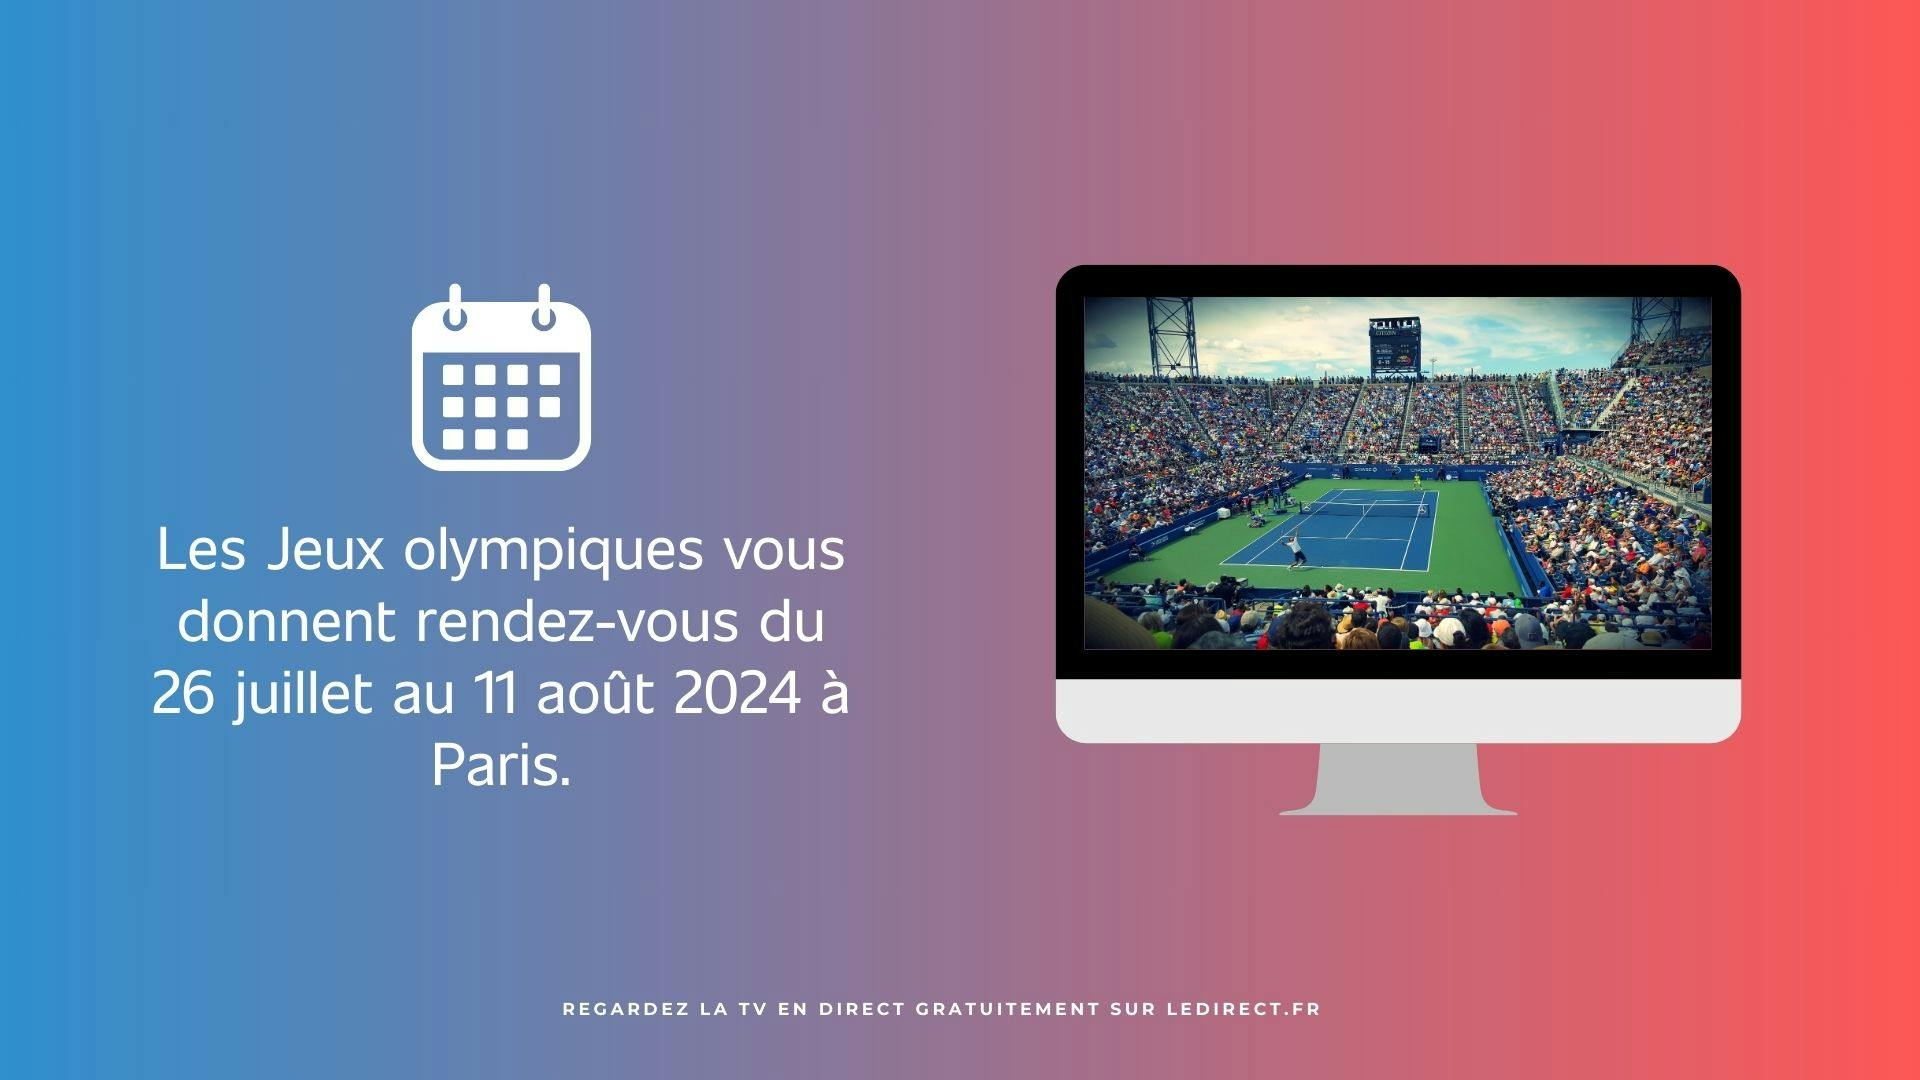 image d’un écran télé montrant une épreuve de tennis avec un texte à gauche au sujet des dates des JO de Paris 2024, le tout sur un fond dégradé